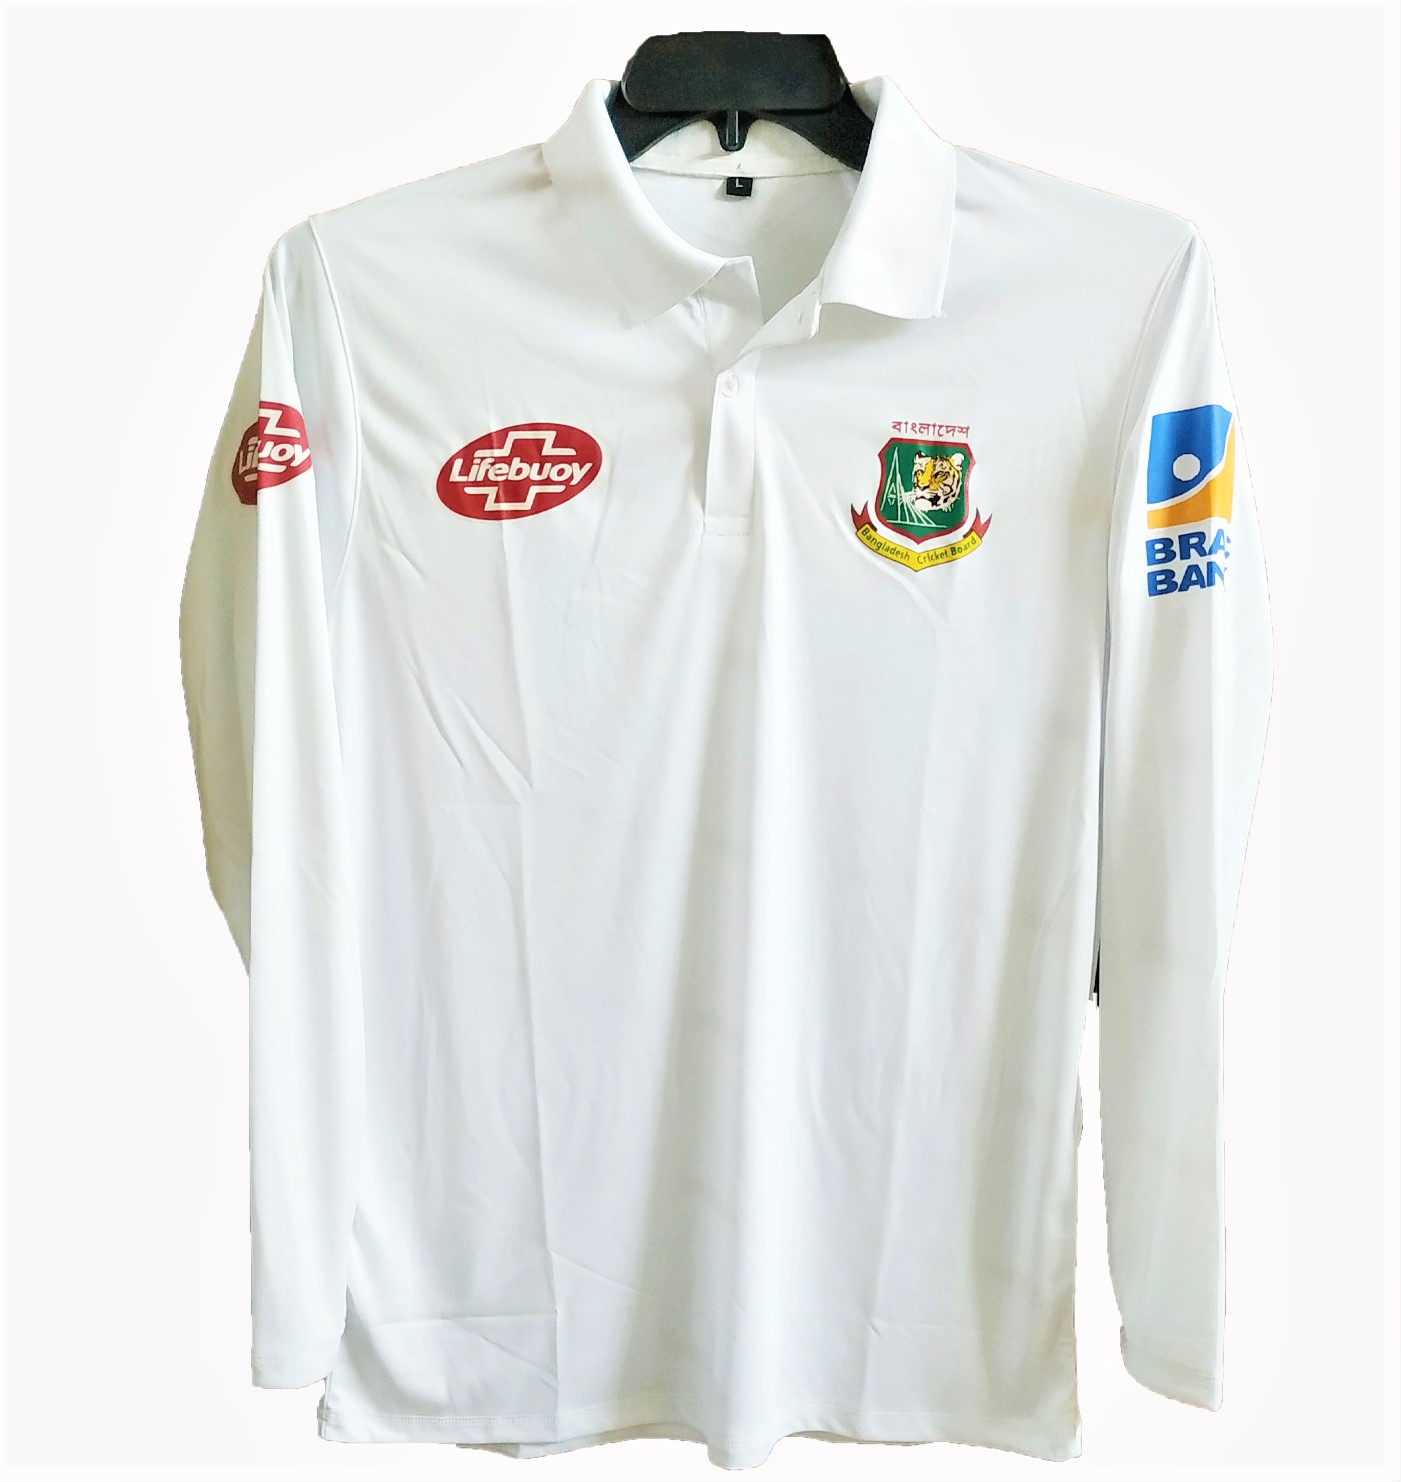 bangladesh cricket jersey 2019